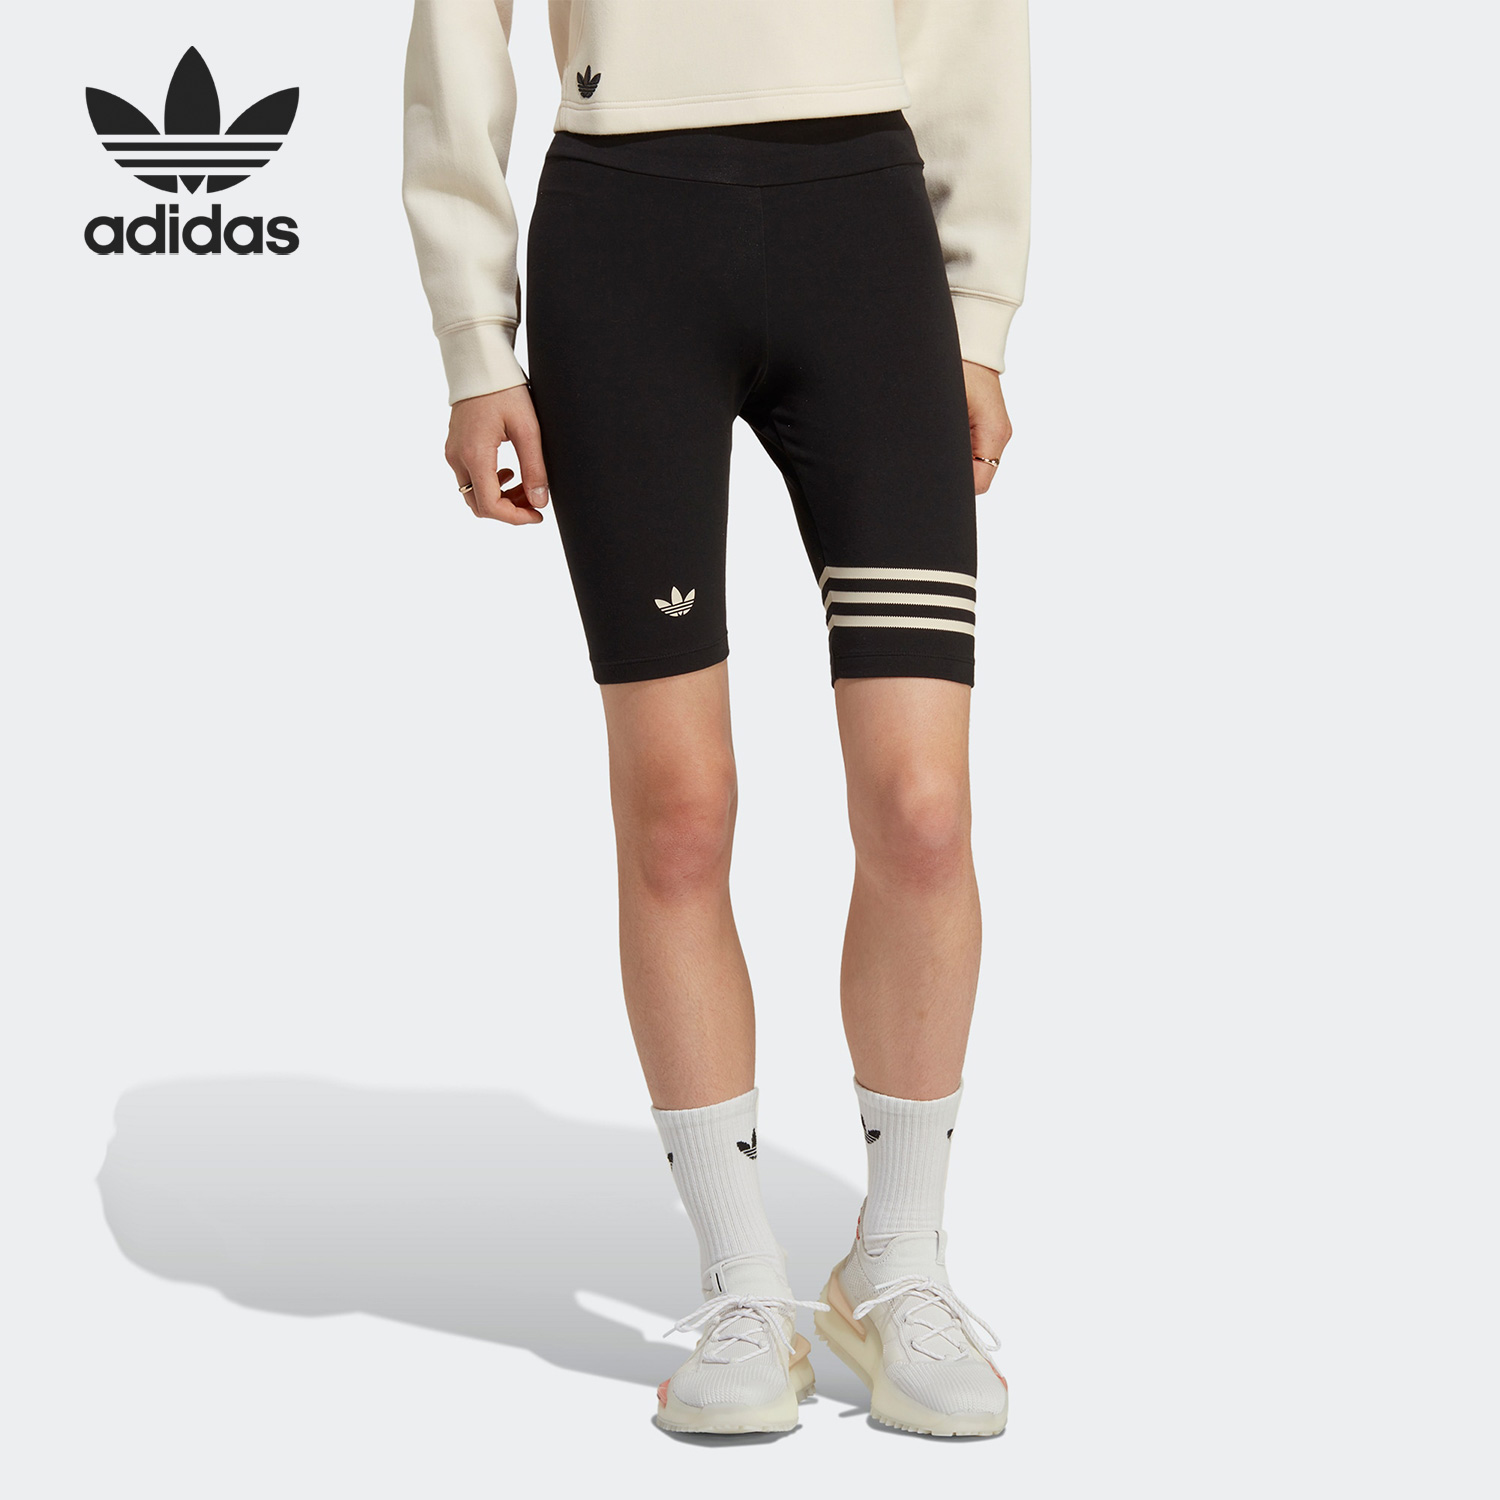 Adidas 阿迪达斯正品 IB7325 三叶草女子高腰运动休闲紧身短裤